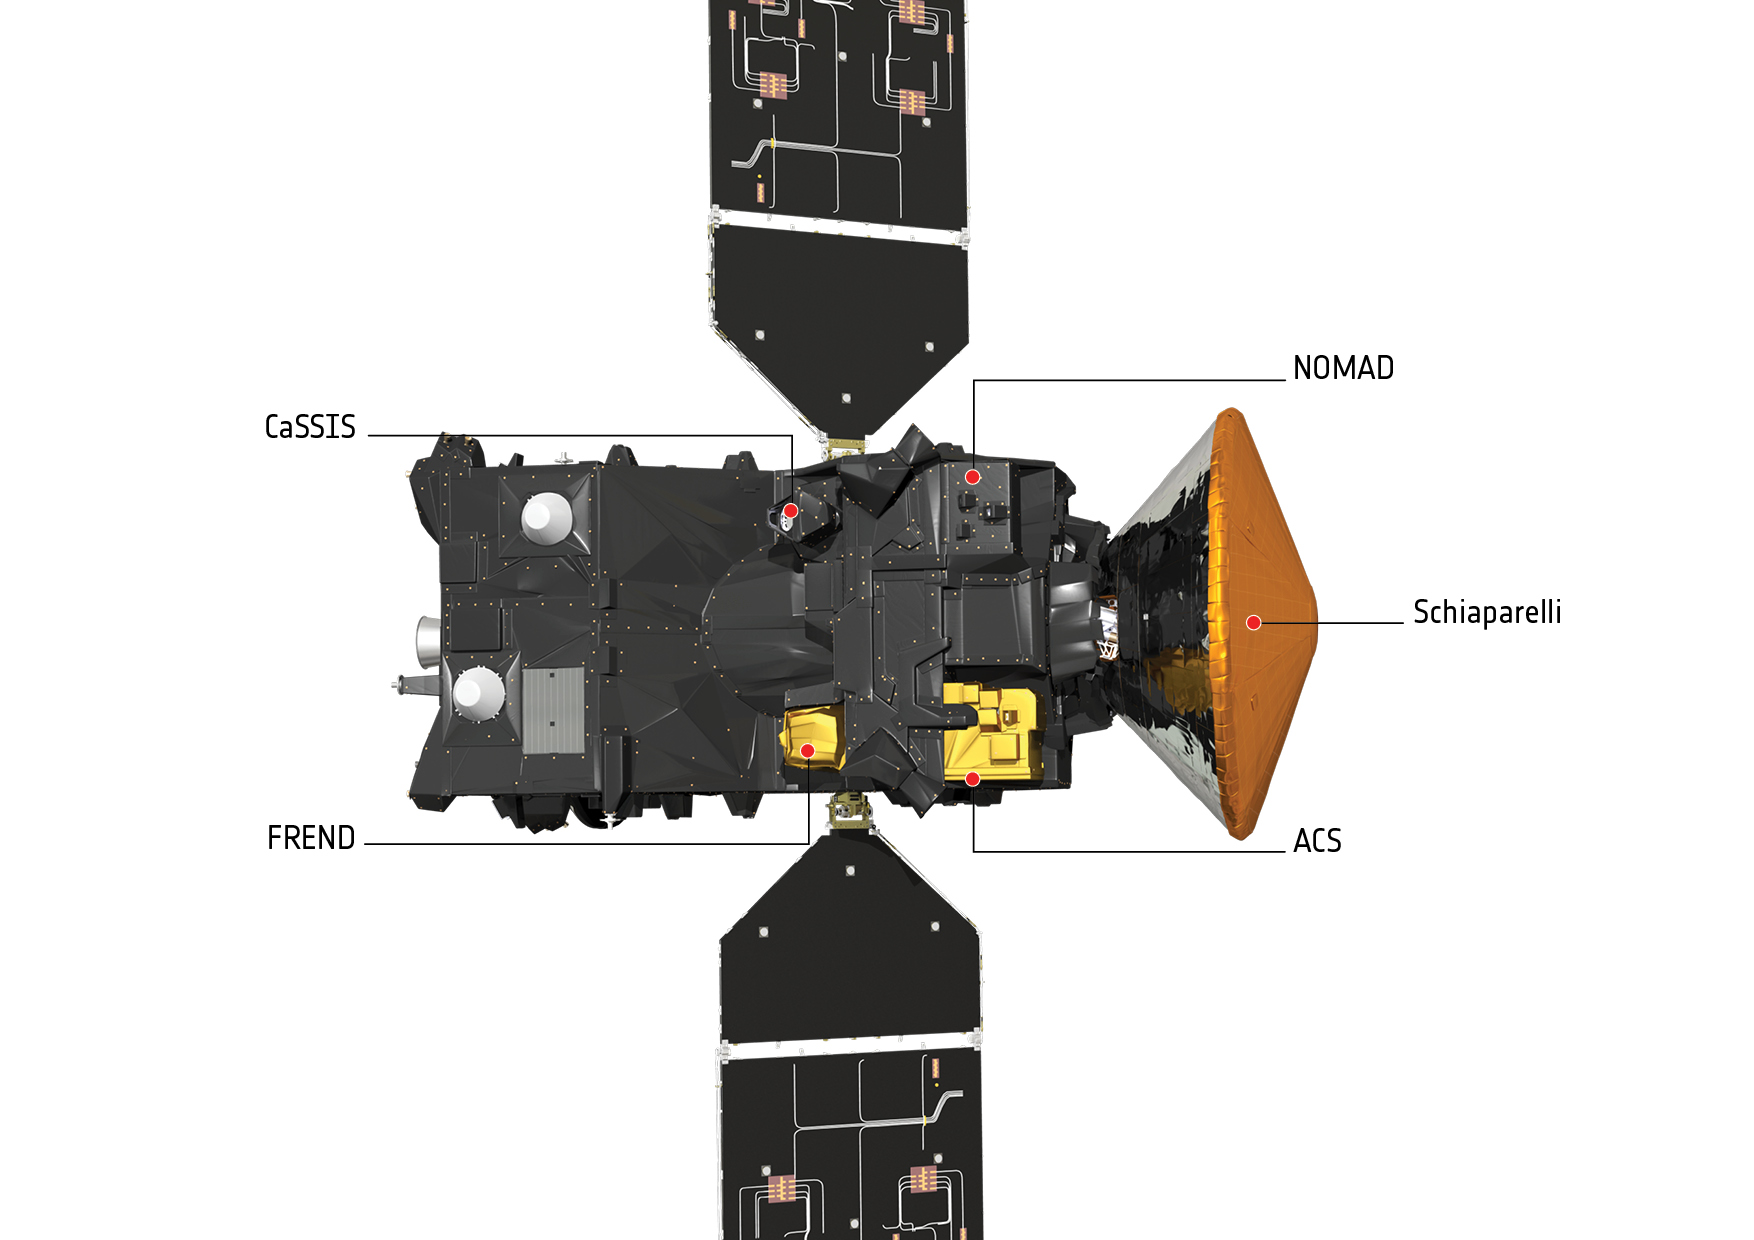 Instruments on TGO spacecraft